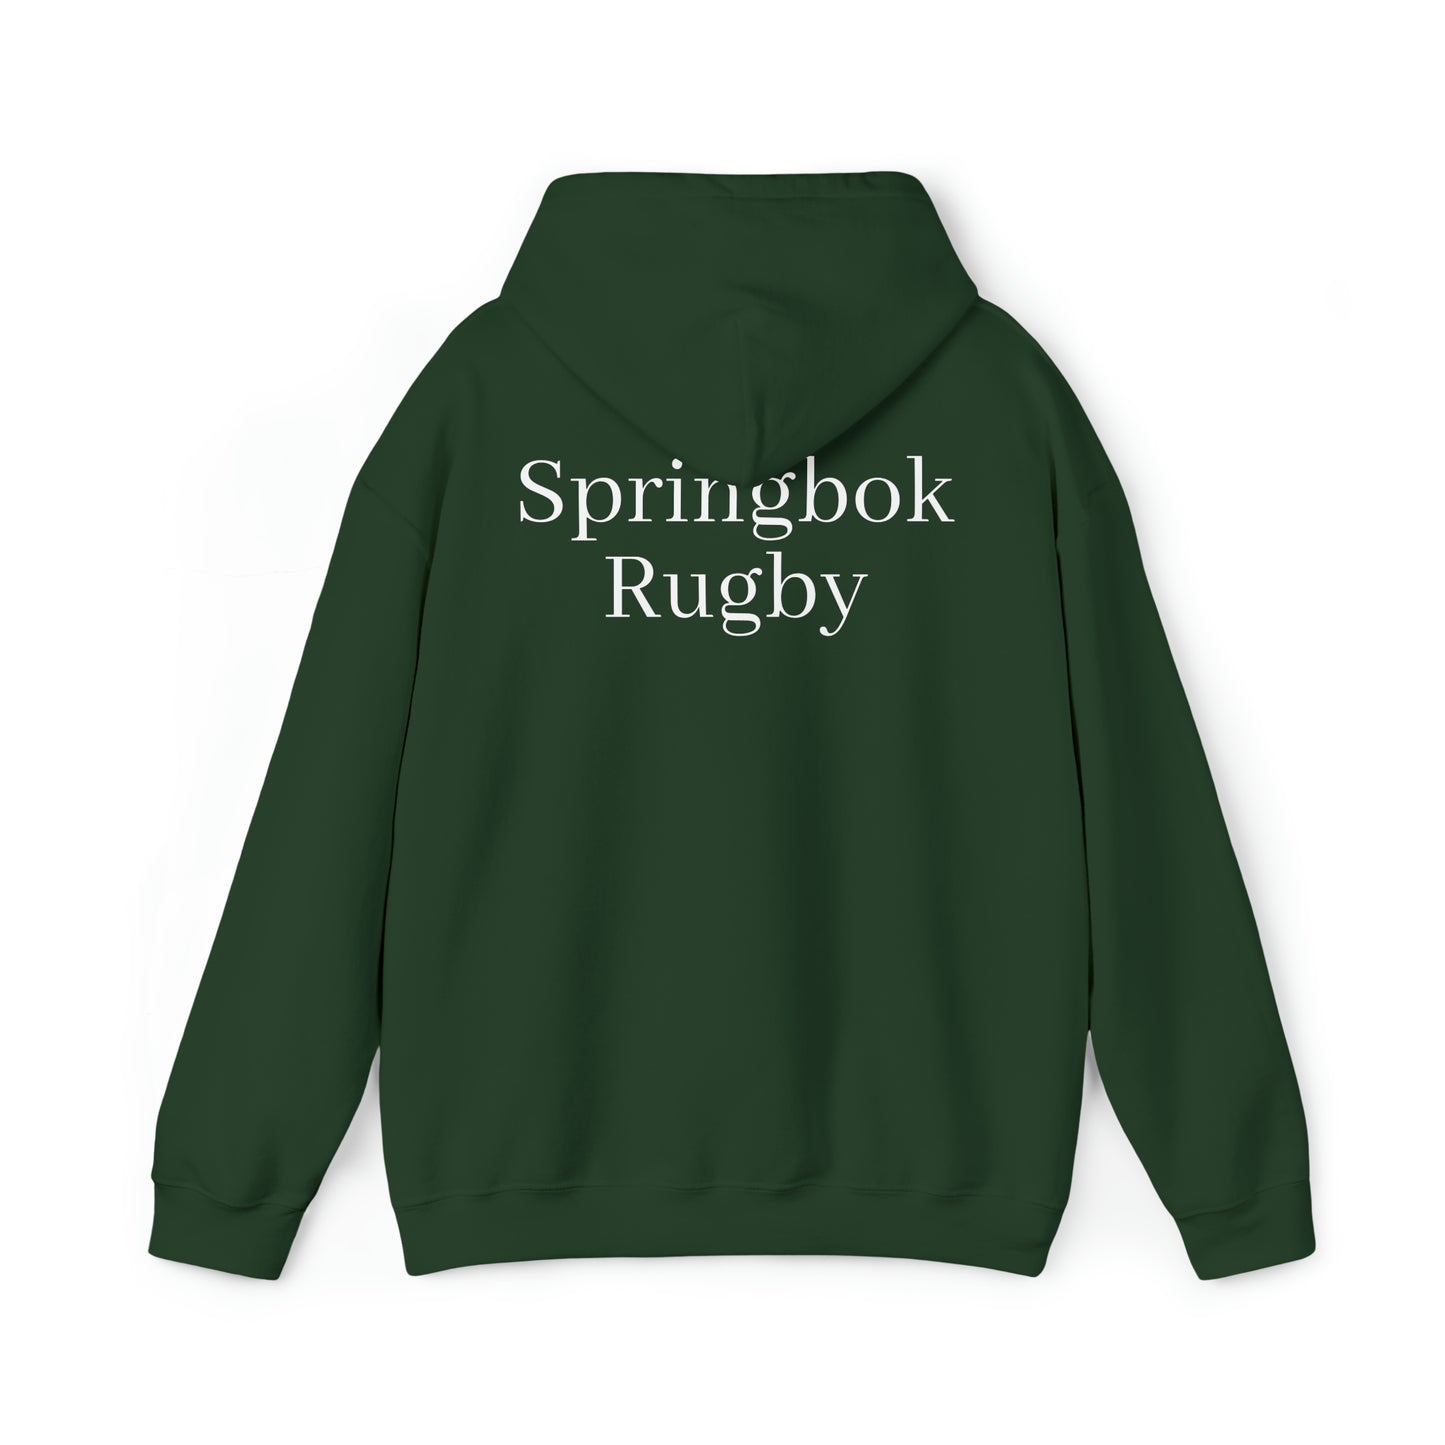 Springboks Celebrating - dark hoodies